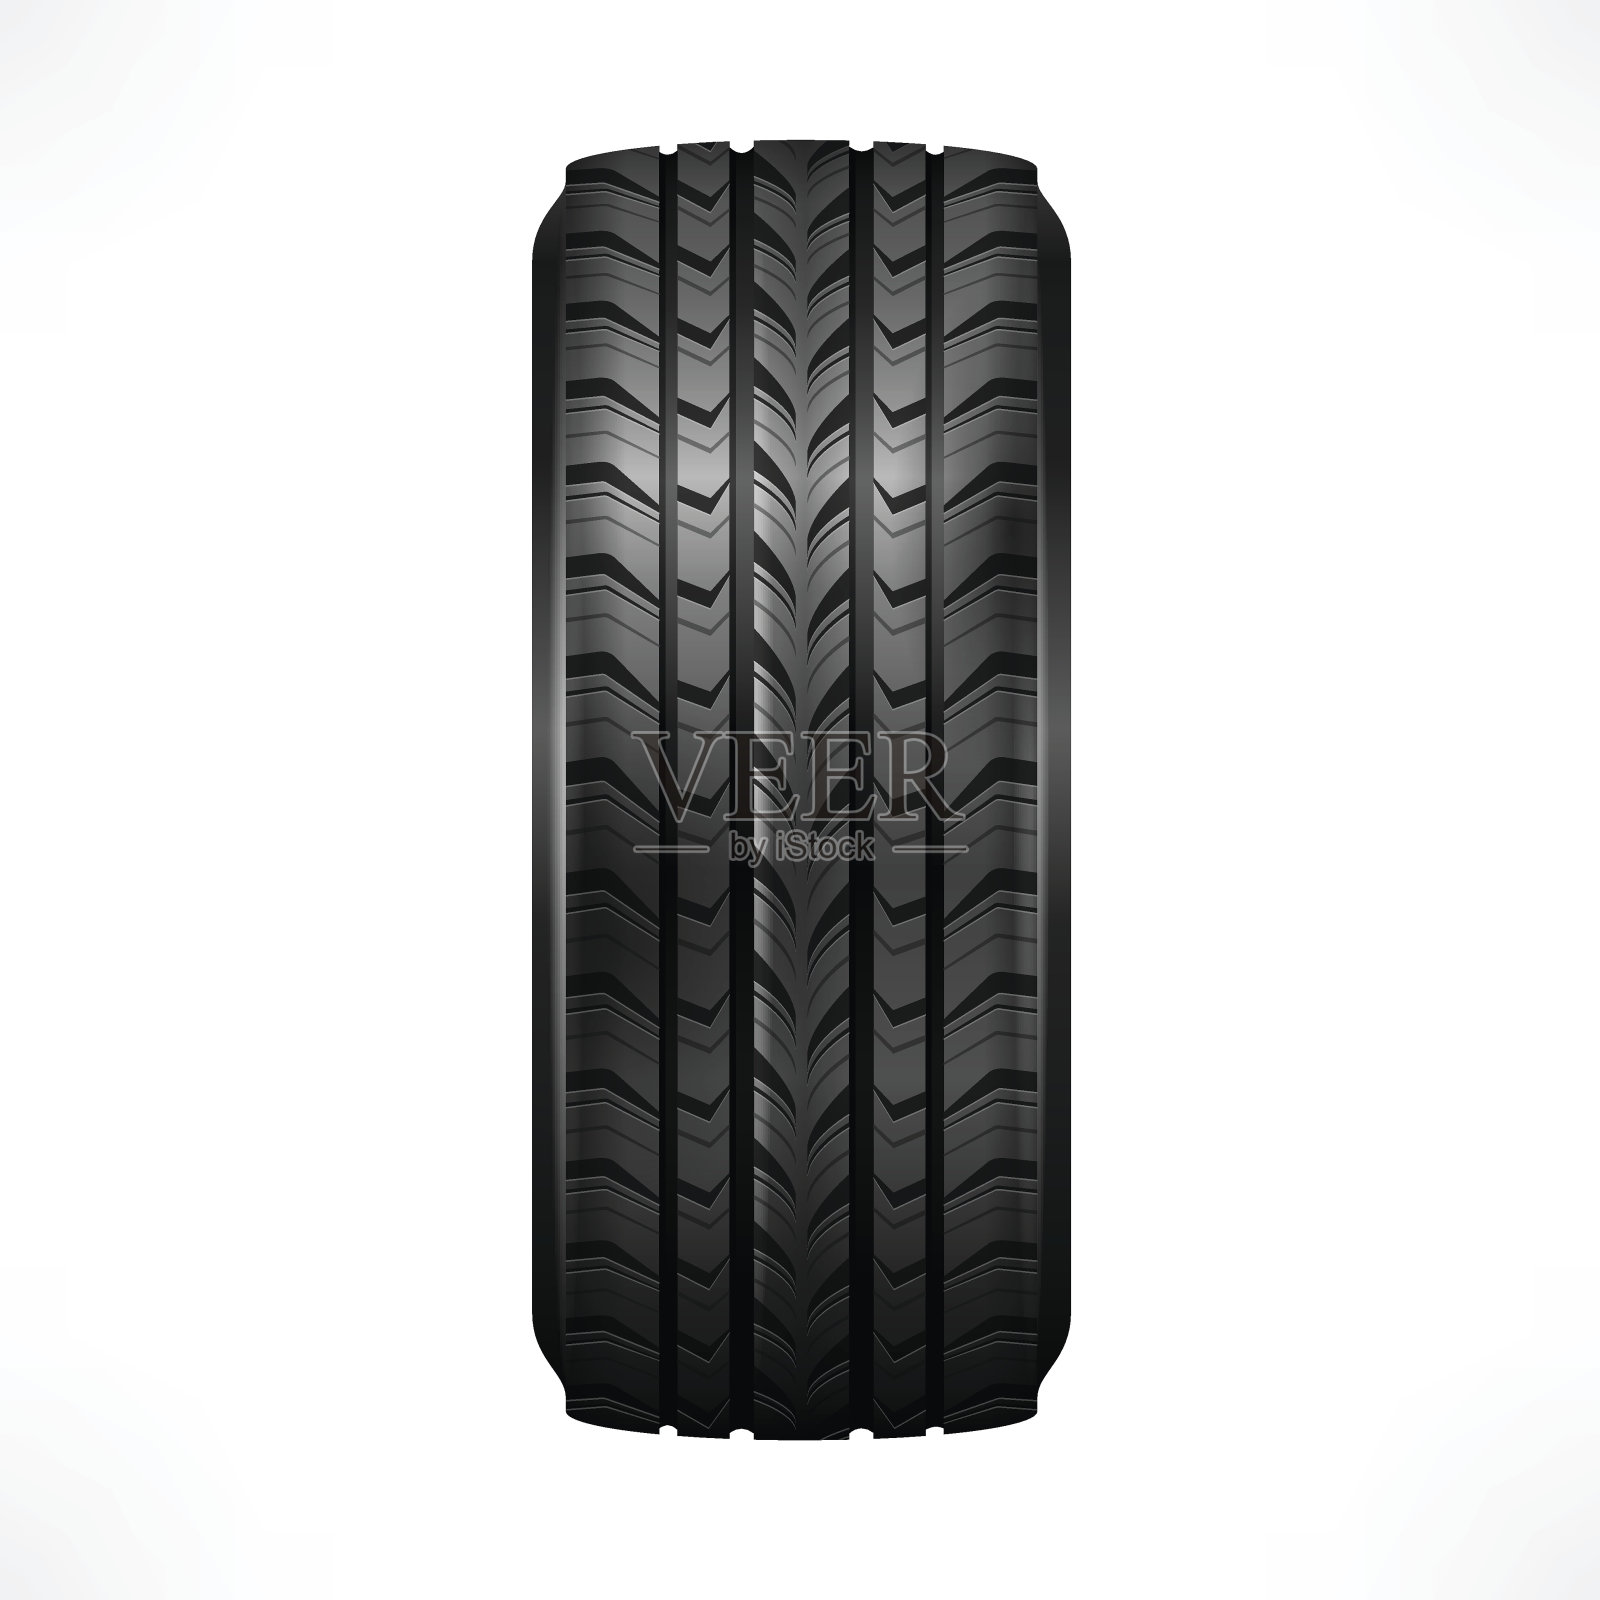 侧面的一个新的，黑色，橡胶汽车轮胎与踏面插画图片素材